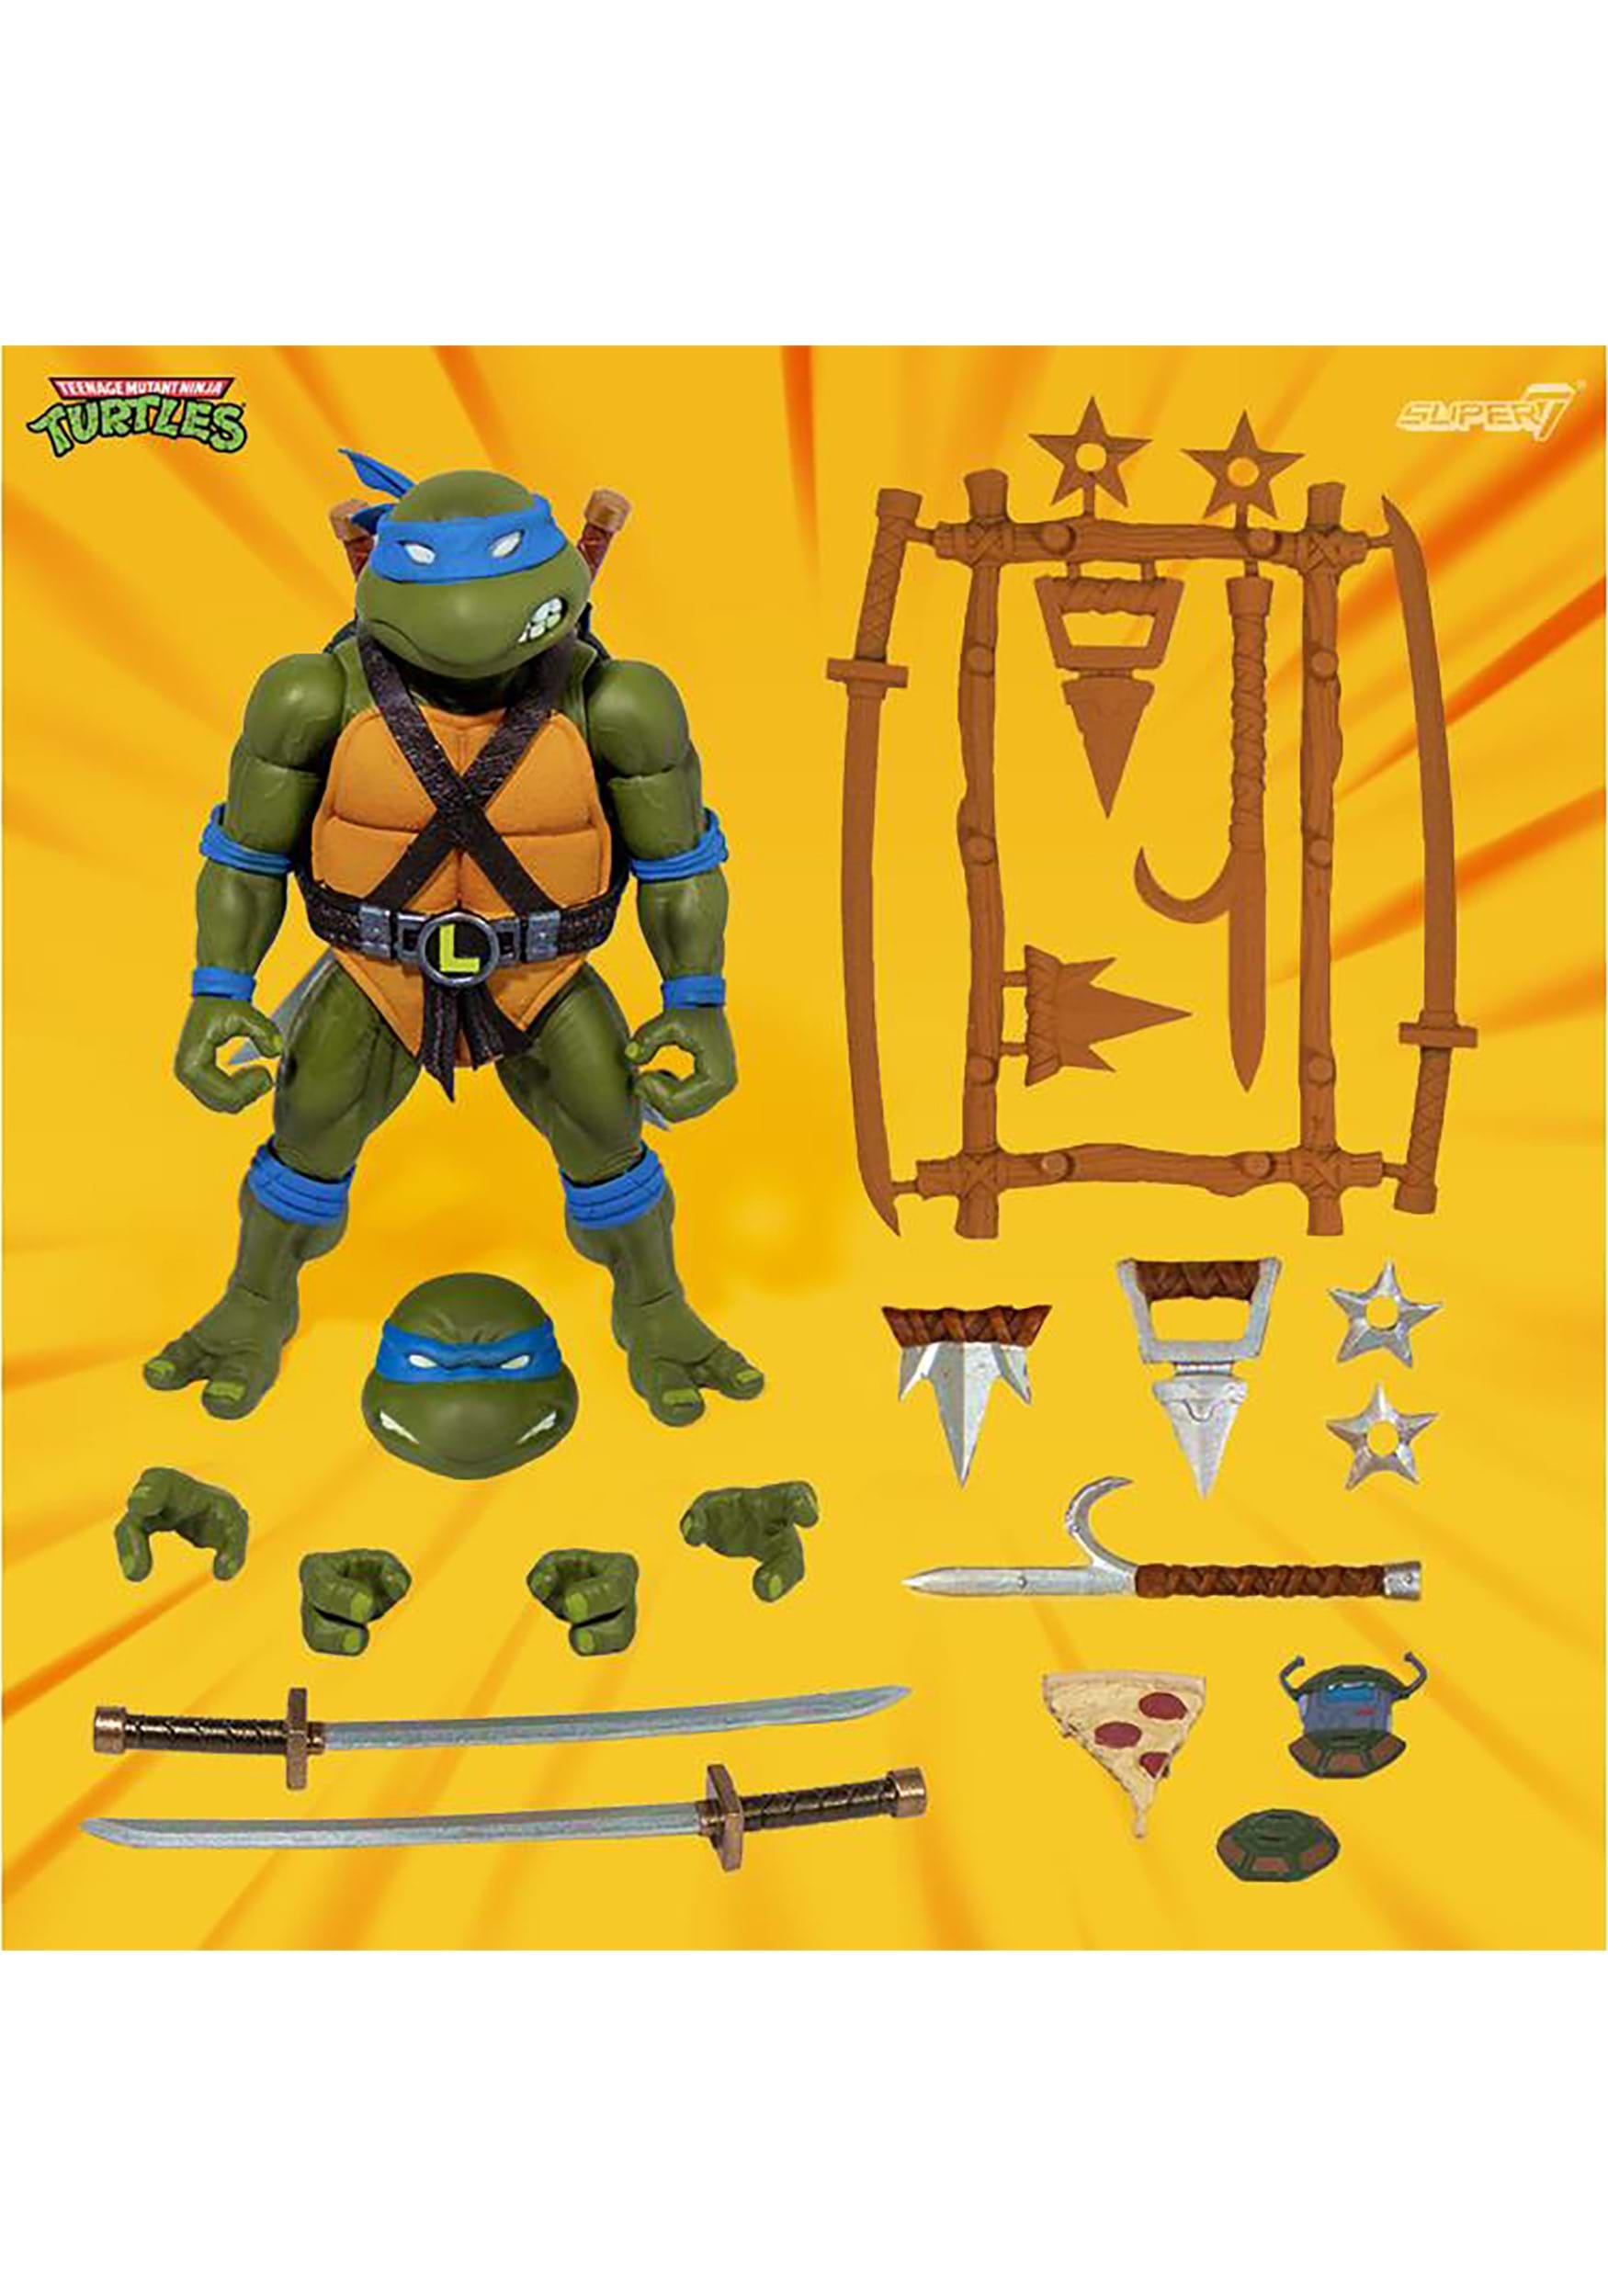 Teenage Mutant Ninja Turtles Ultimates Leonardo 7 Action Figure